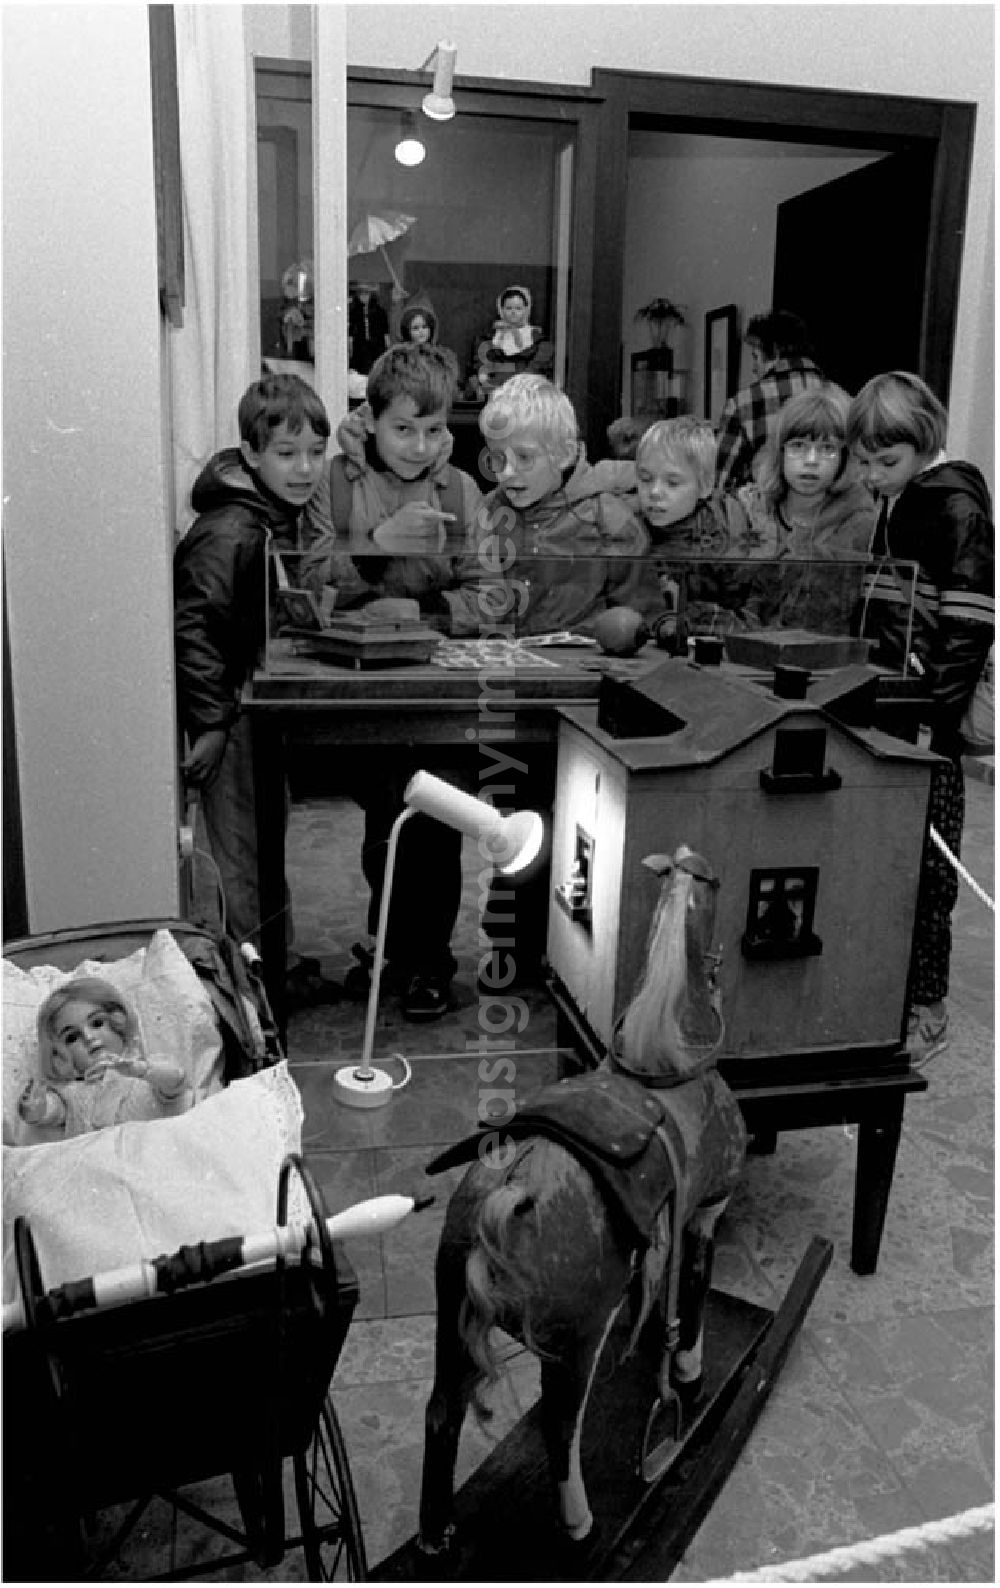 GDR image archive: Berlin - Spielzeugausstellung im Handwerksmuseum.